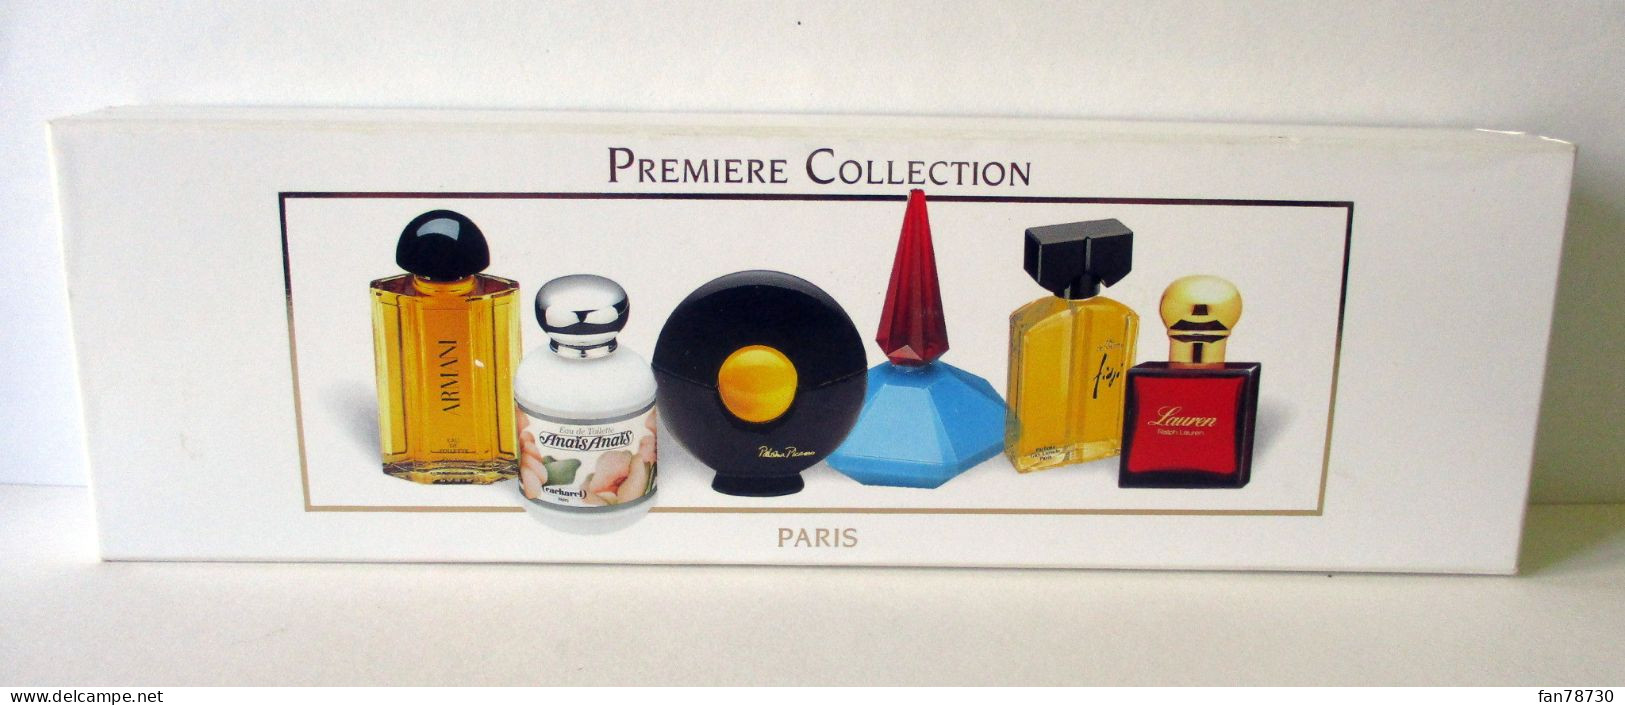 Miniatures X 6 "Première Collection" Paris - Prestige Et Collections - FRAIS DU SITE DEDUITS - Miniatures Womens' Fragrances (in Box)